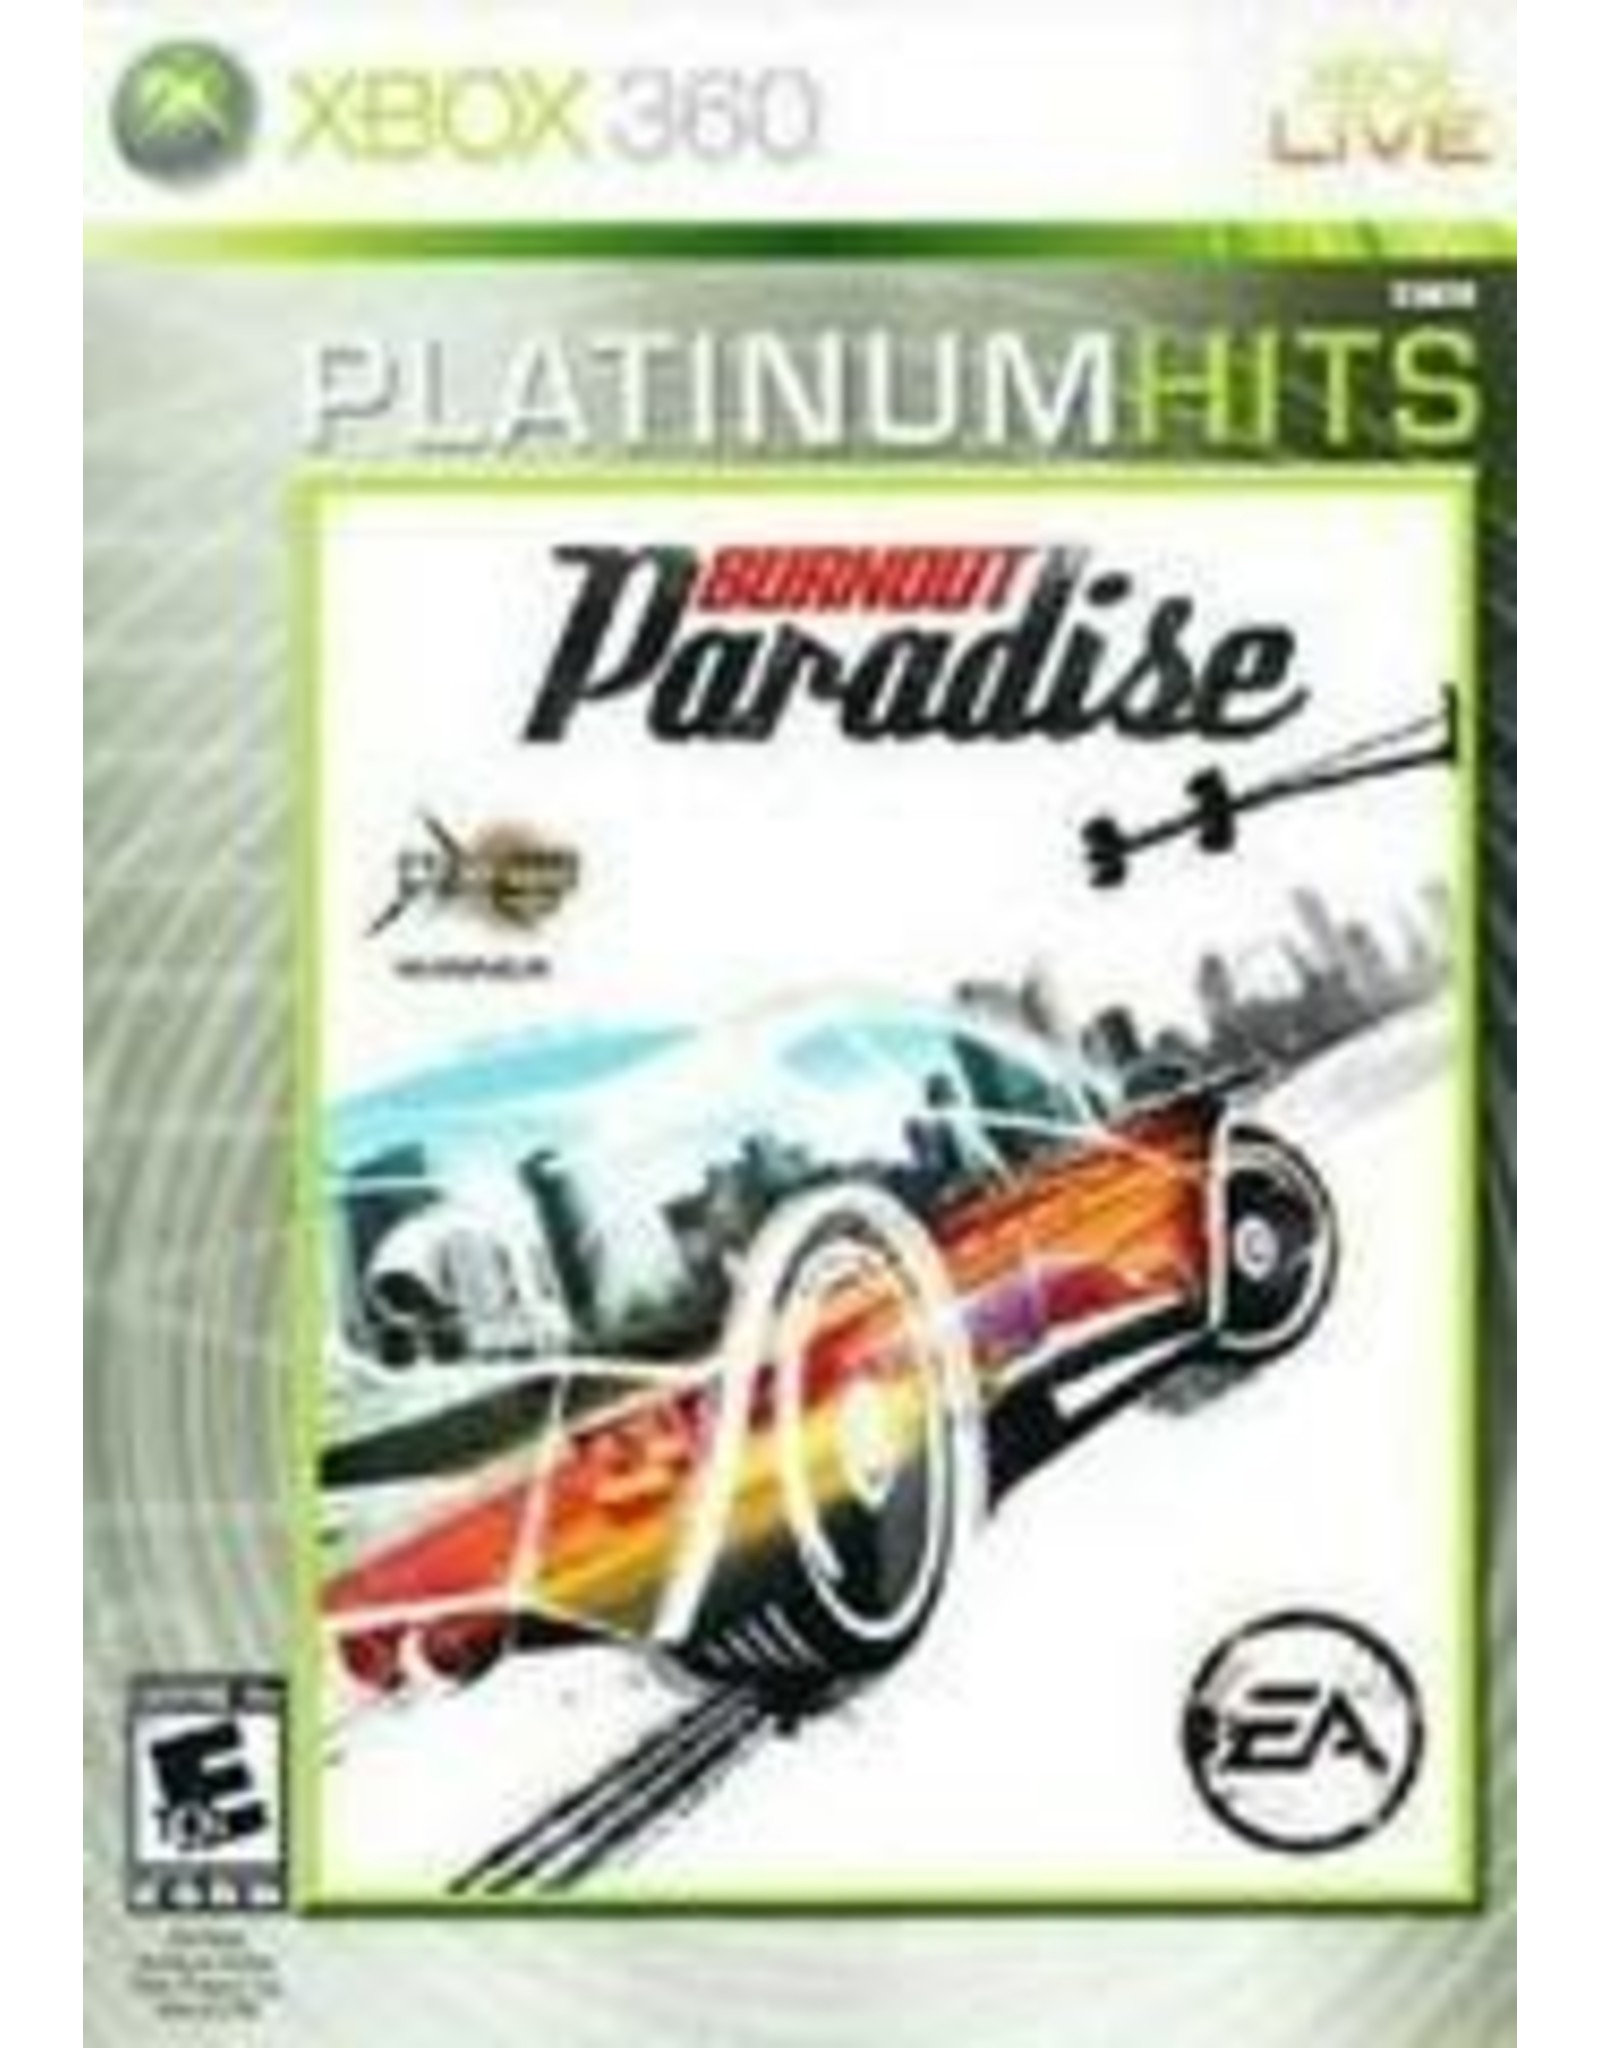 Xbox 360 Burnout Paradise - Platinum Hits (Used)